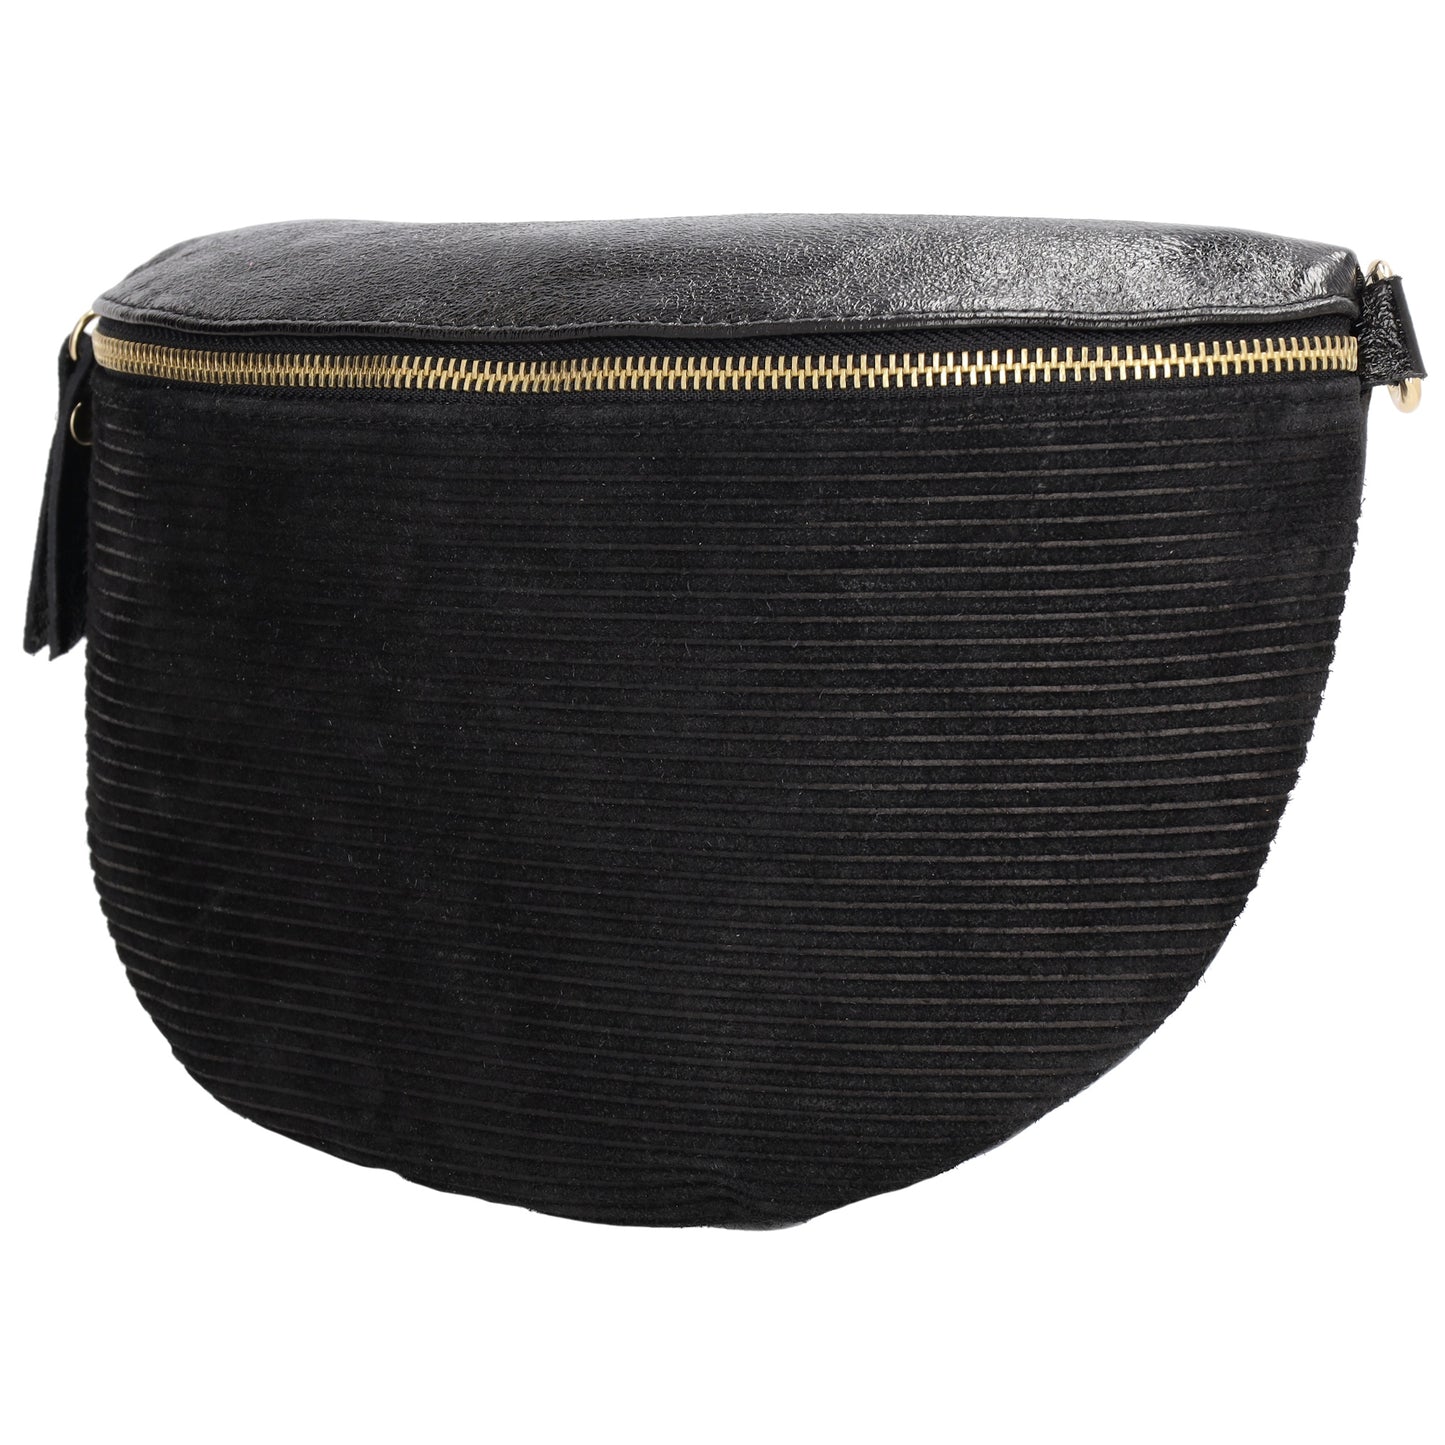 Bodybag|Gürteltasche 30x20cm in Schwarz aus Leder und Kord